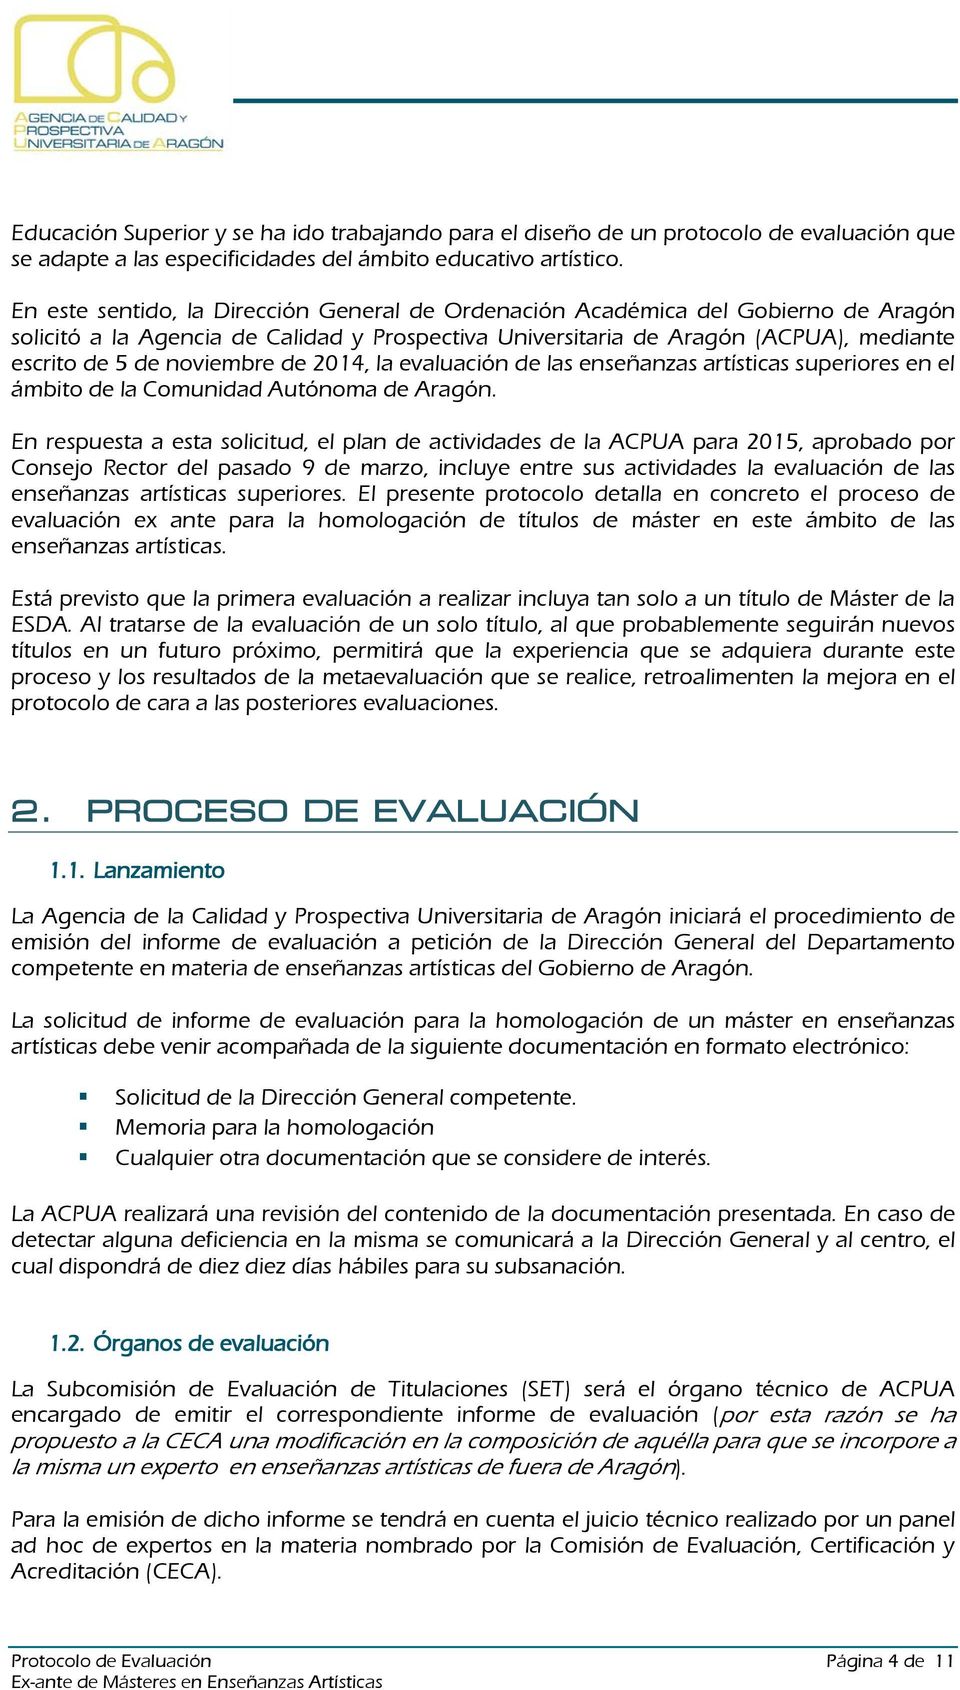 de 2014, la evaluación de las enseñanzas artísticas superiores en el ámbito de la Comunidad Autónoma de Aragón.